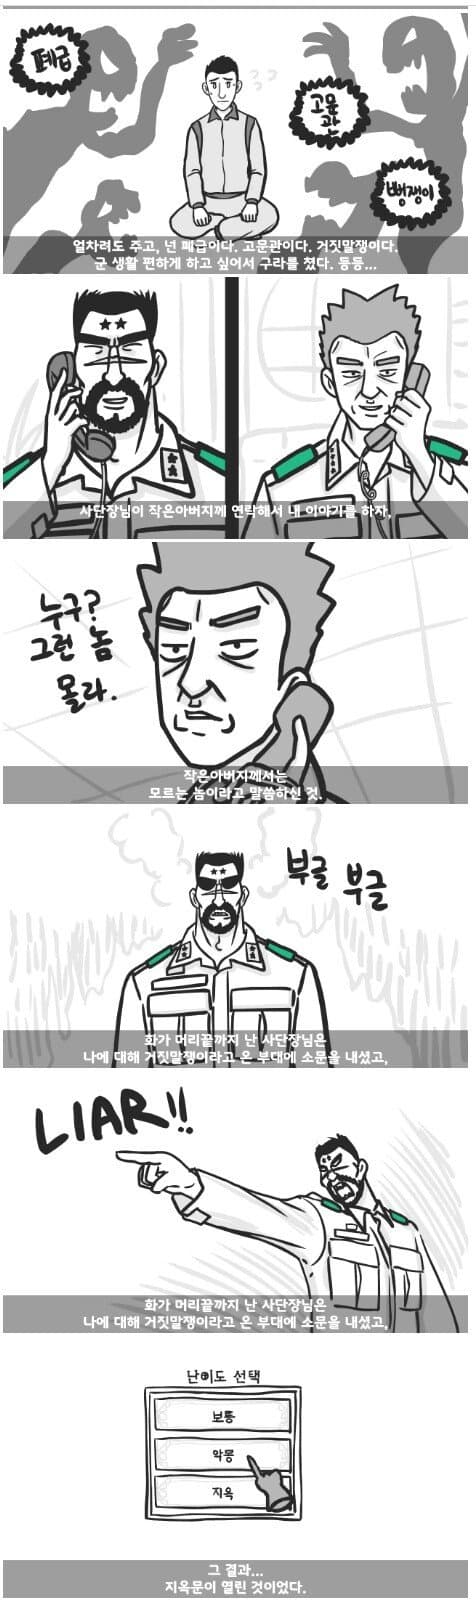 군대 4스타인 만화 6.jpg